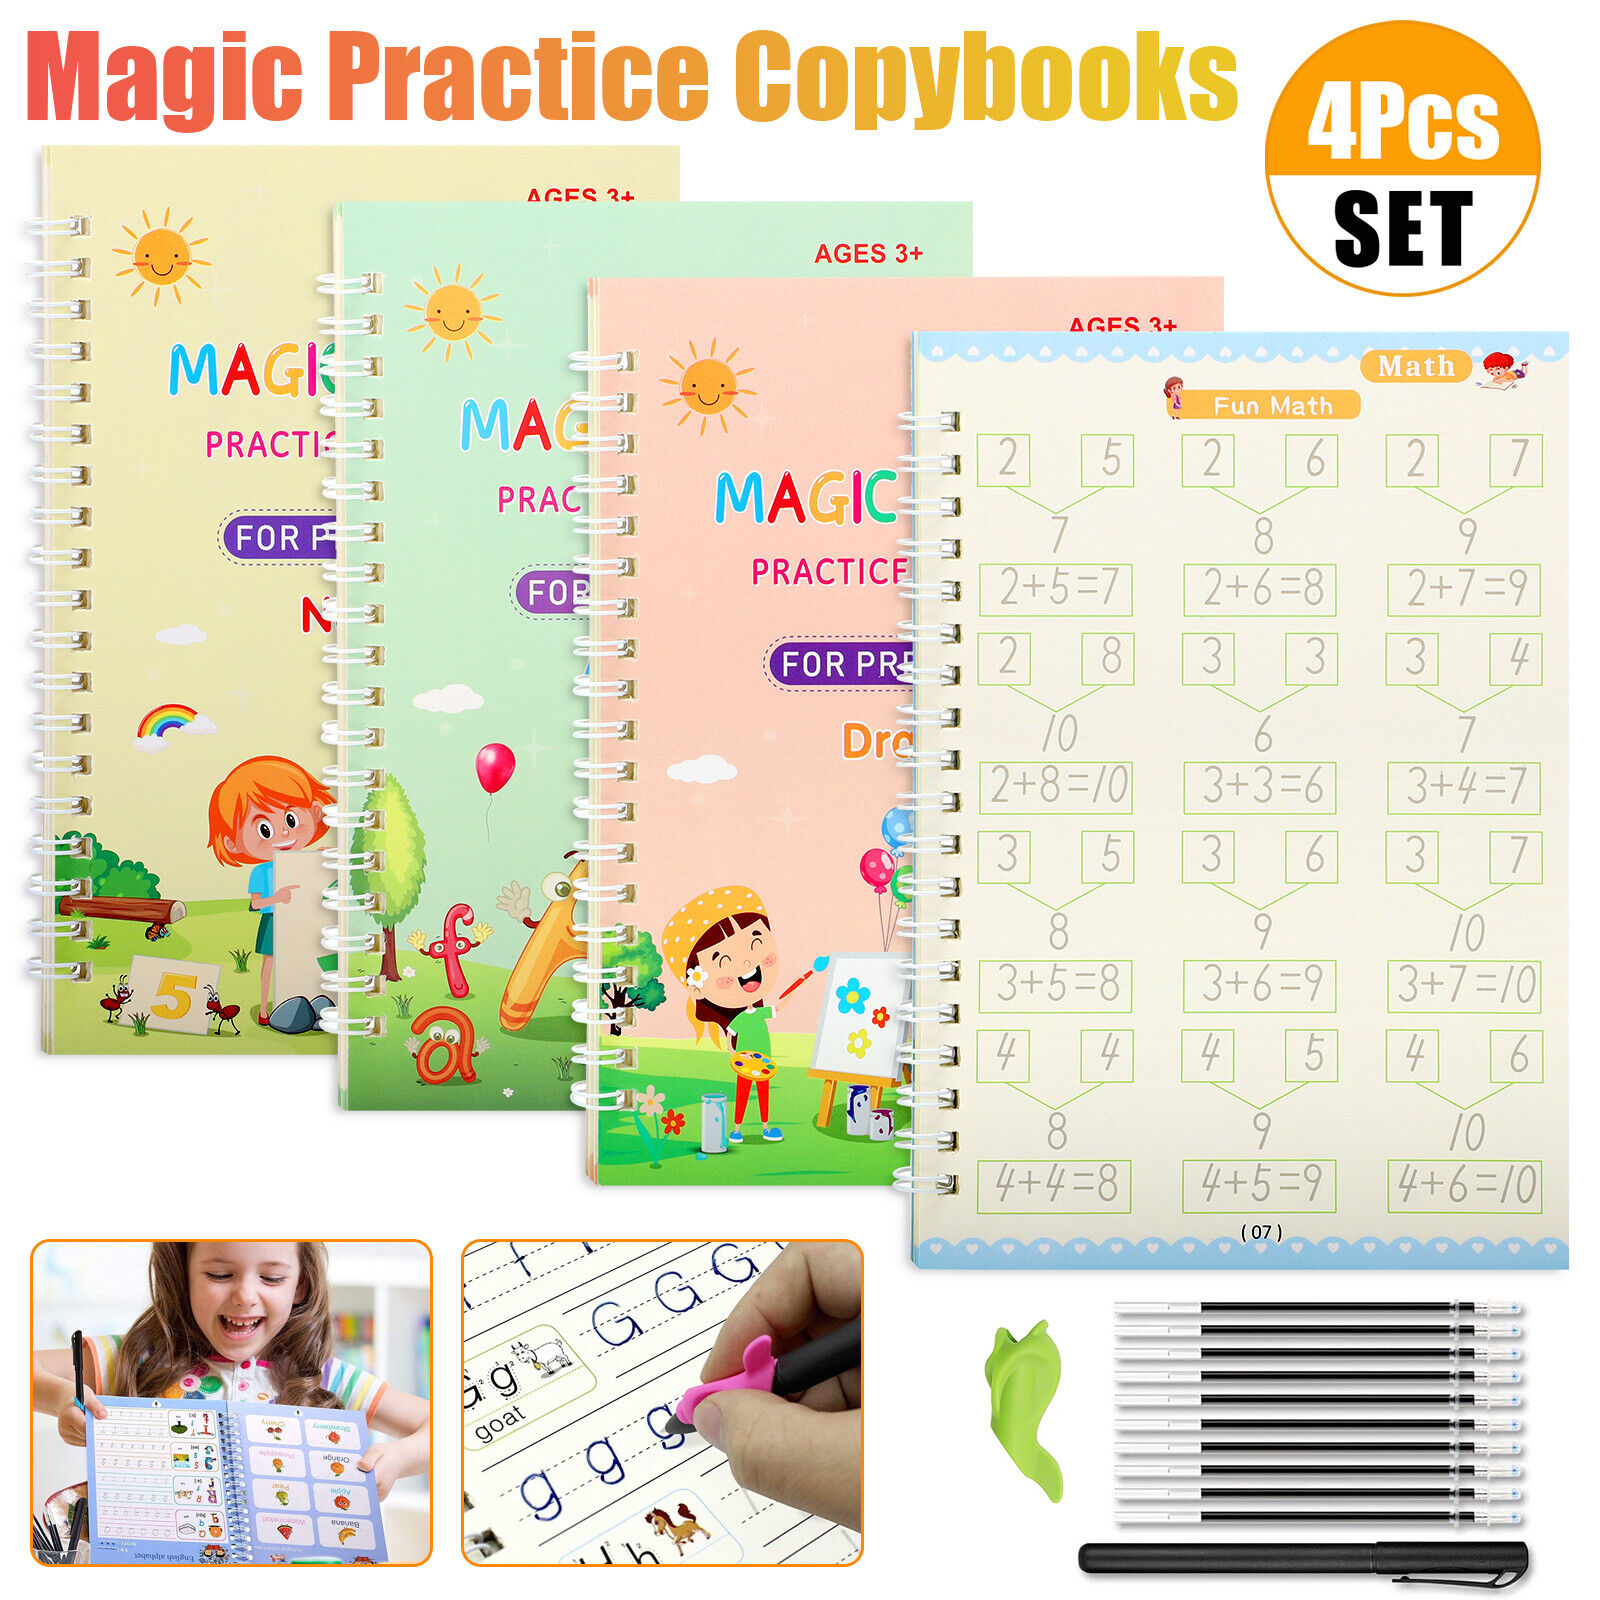 16in1 Magic Practice Copybook Set Reusable Children's Handwriting Book Practice